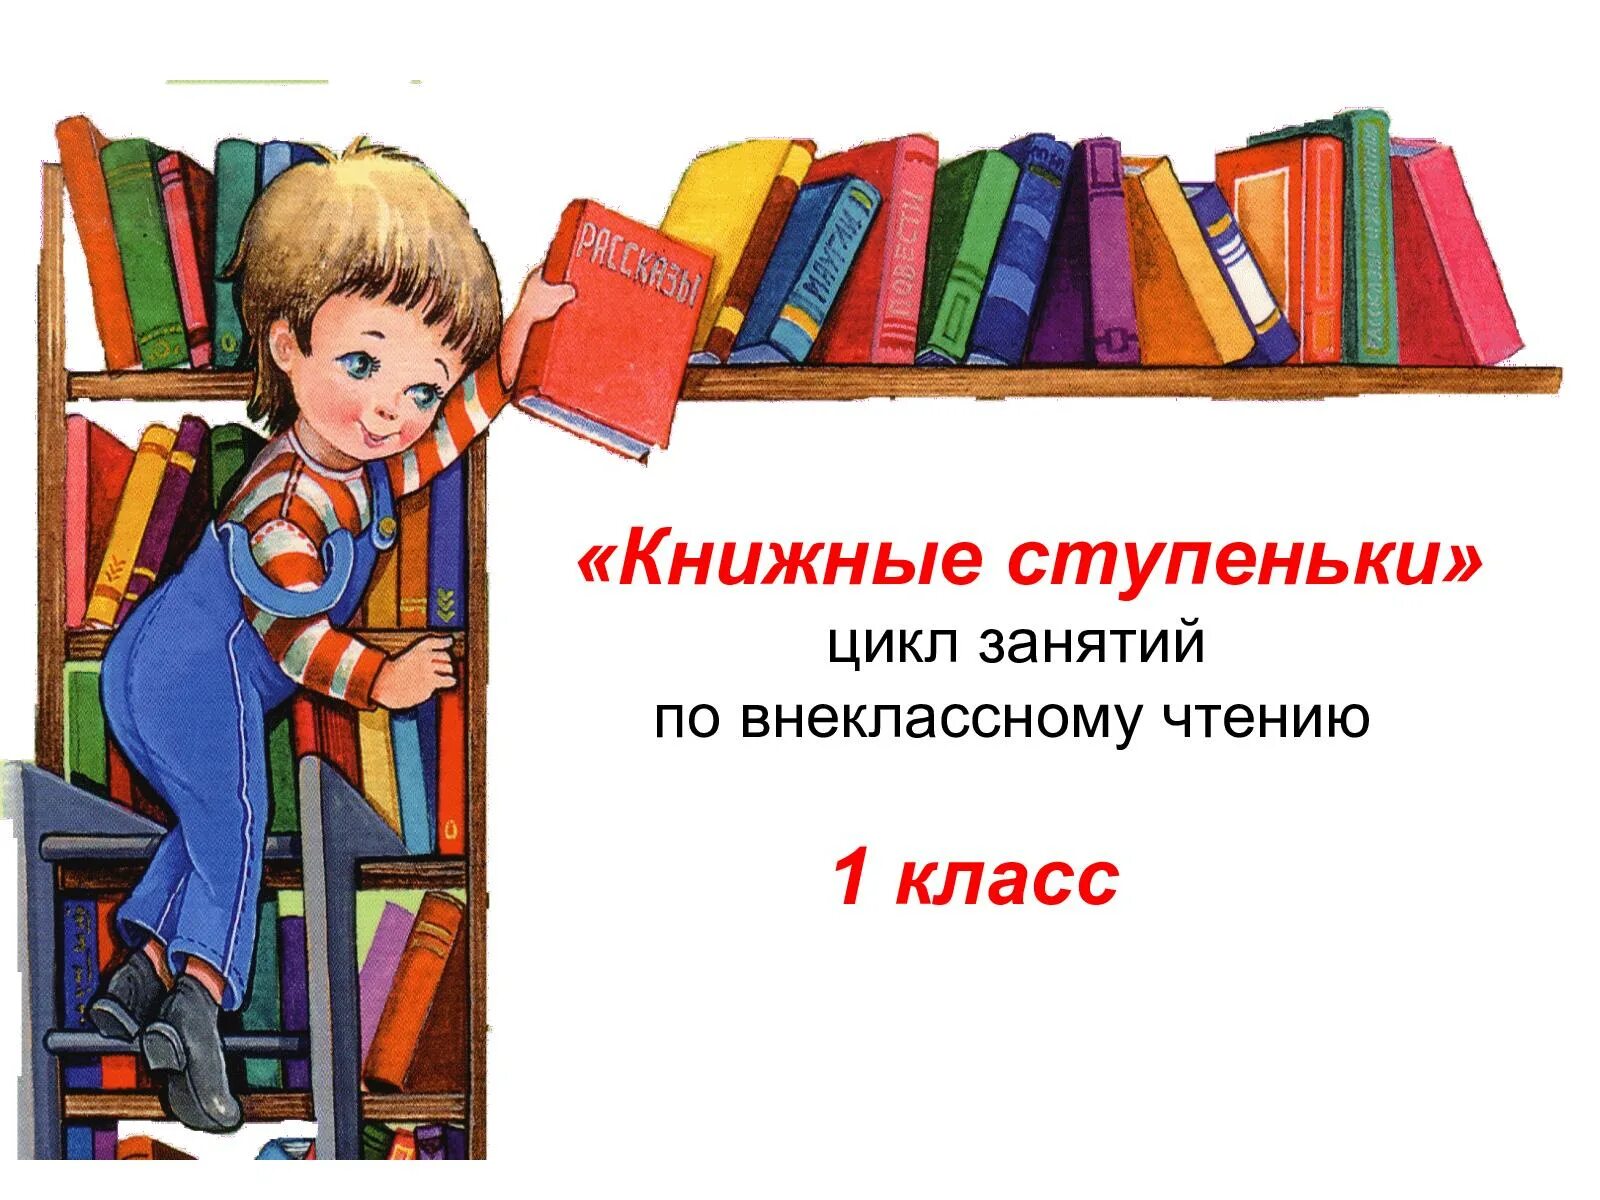 Стихи про библиотеку. Стихи про библиотеку для детей. Стихотворение про библиотеку для детей. Стих про книгу.